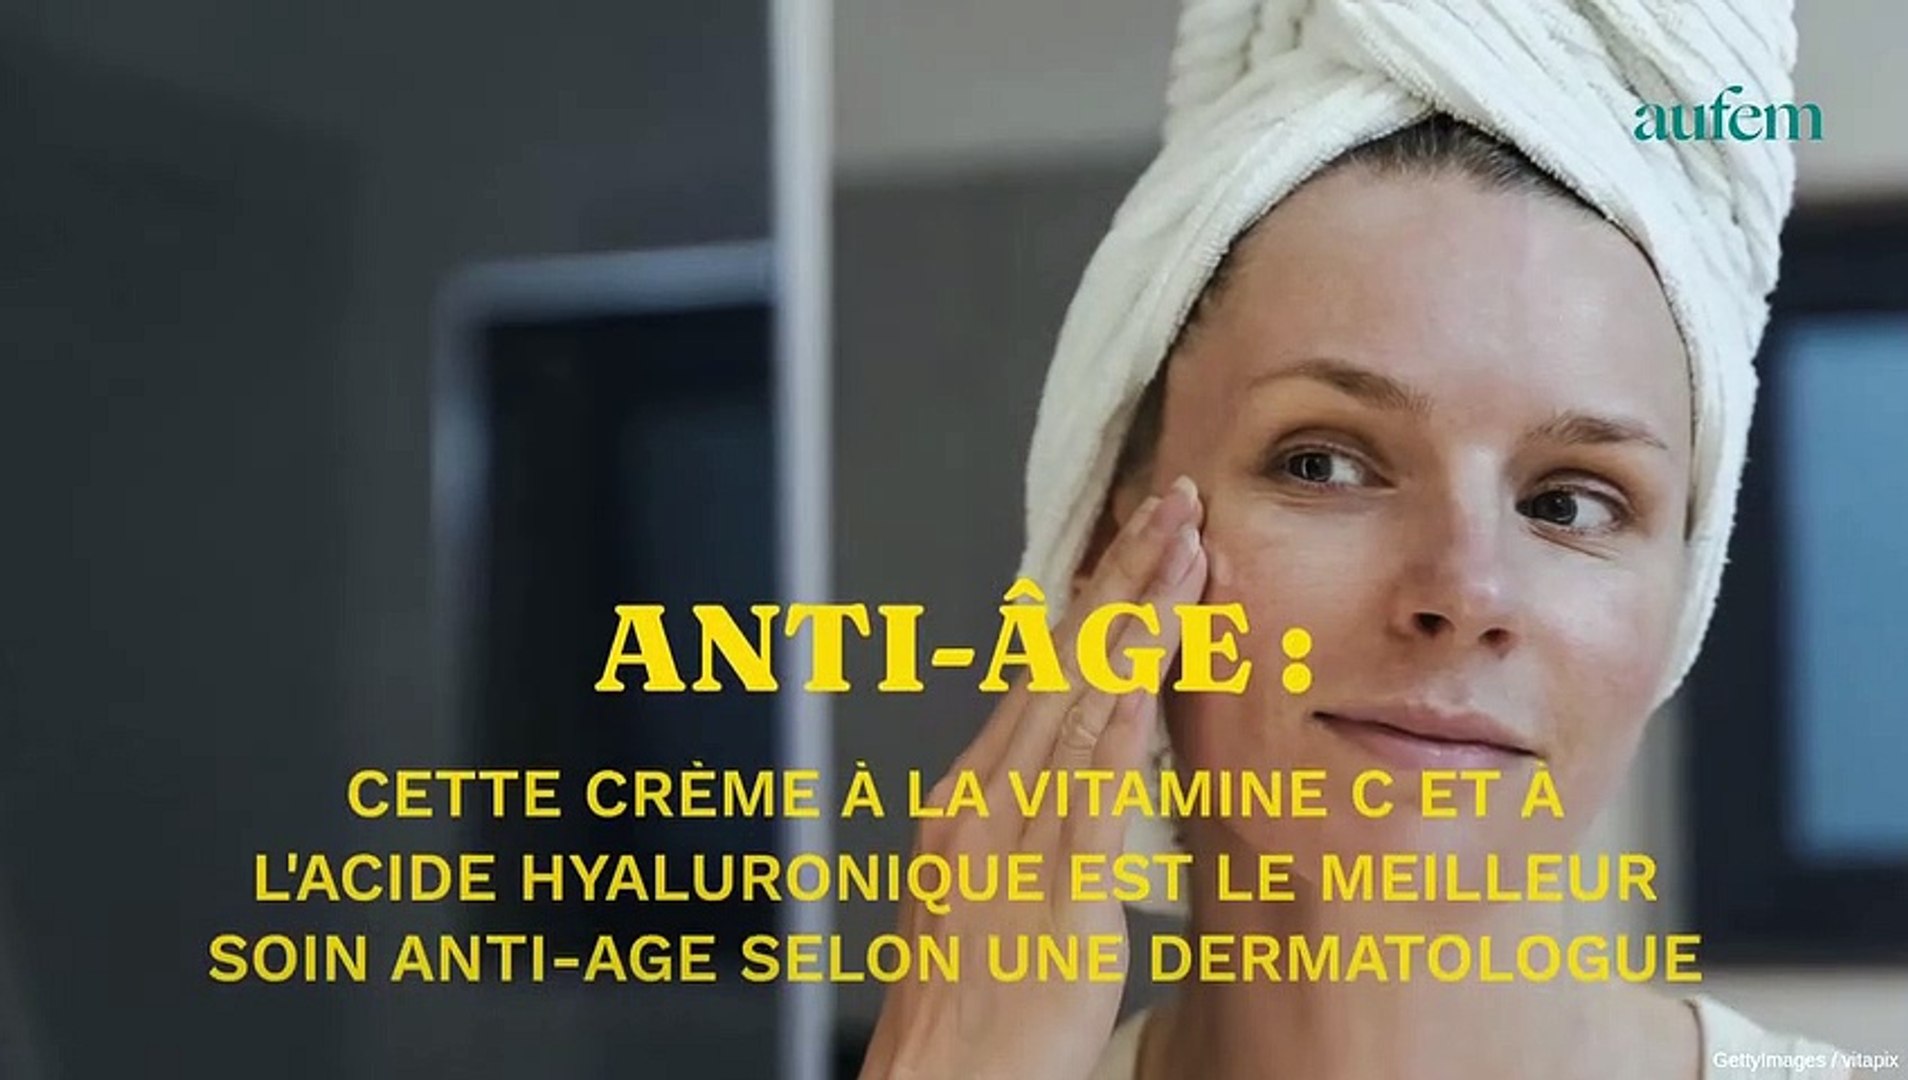 Cette crème à la vitamine C et acide hyaluronique est le meilleur soin anti- âge selon une dermatologue - Vidéo Dailymotion